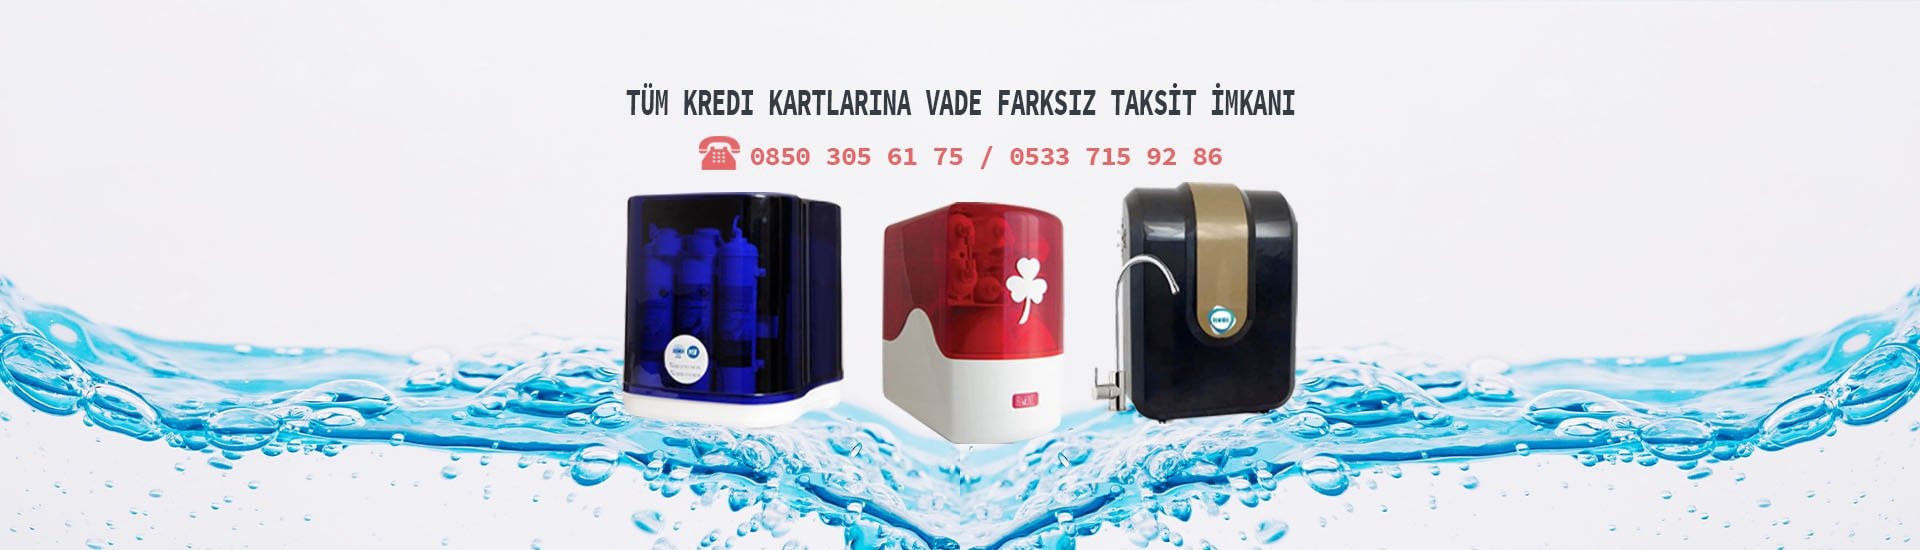 Ankara Su Arıtma Sistemleri -  0850 305 61 75